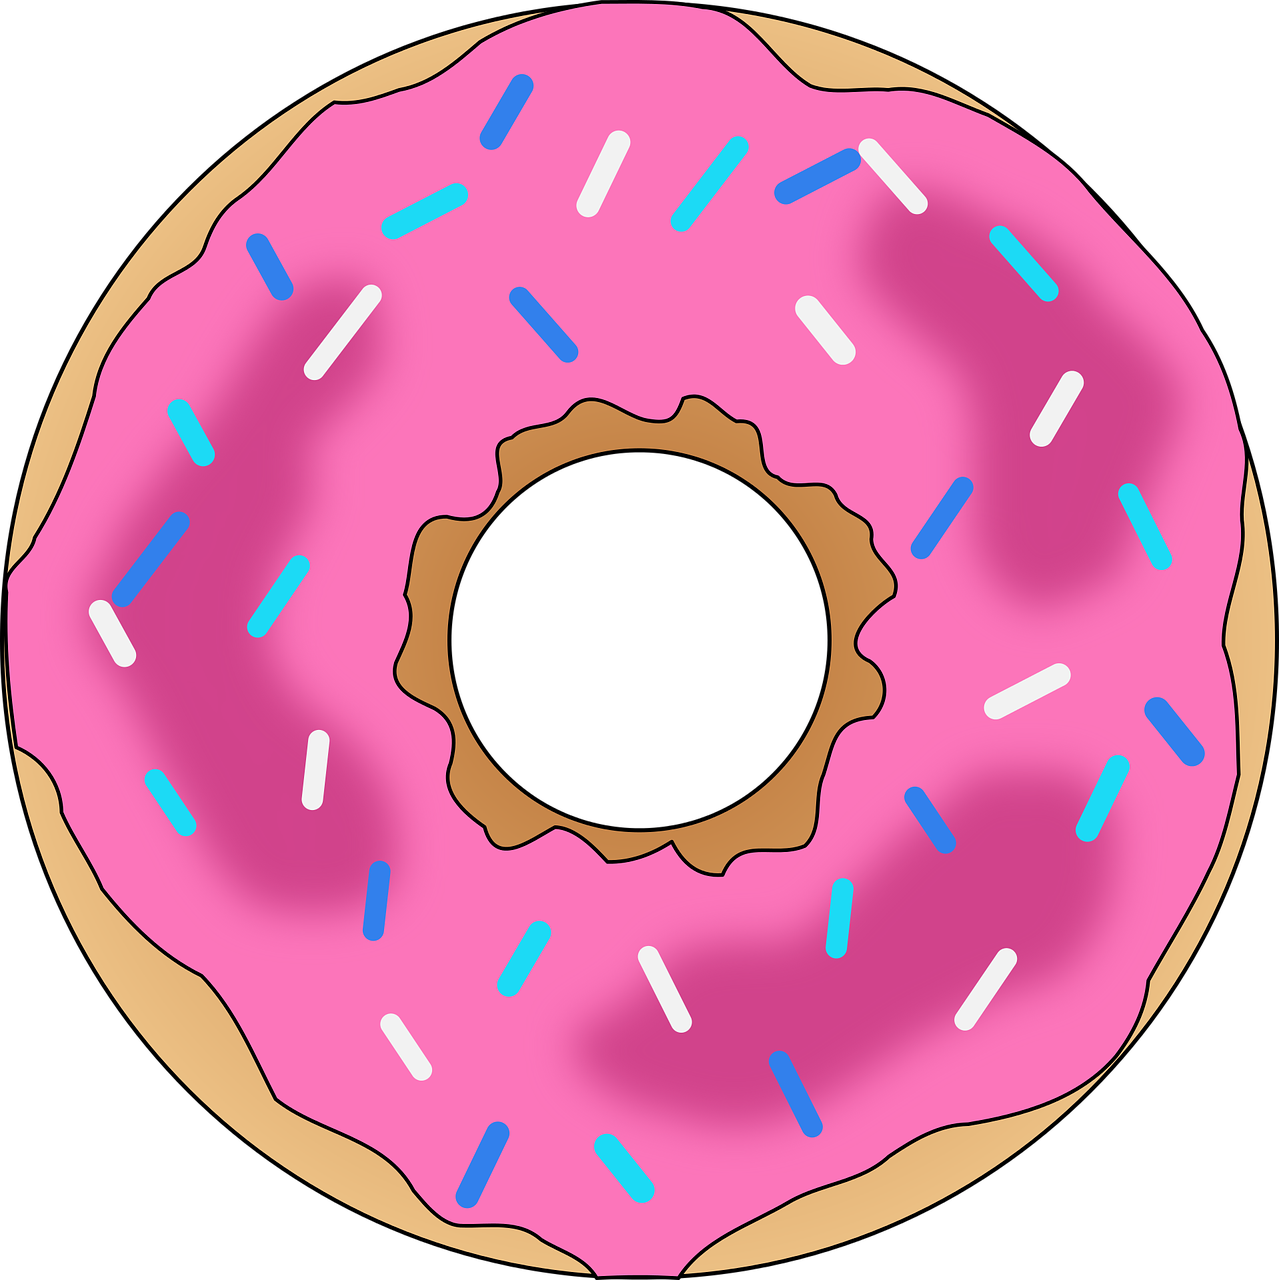 Pink Frosted Sprinkled Doughnut Illustration.png PNG image